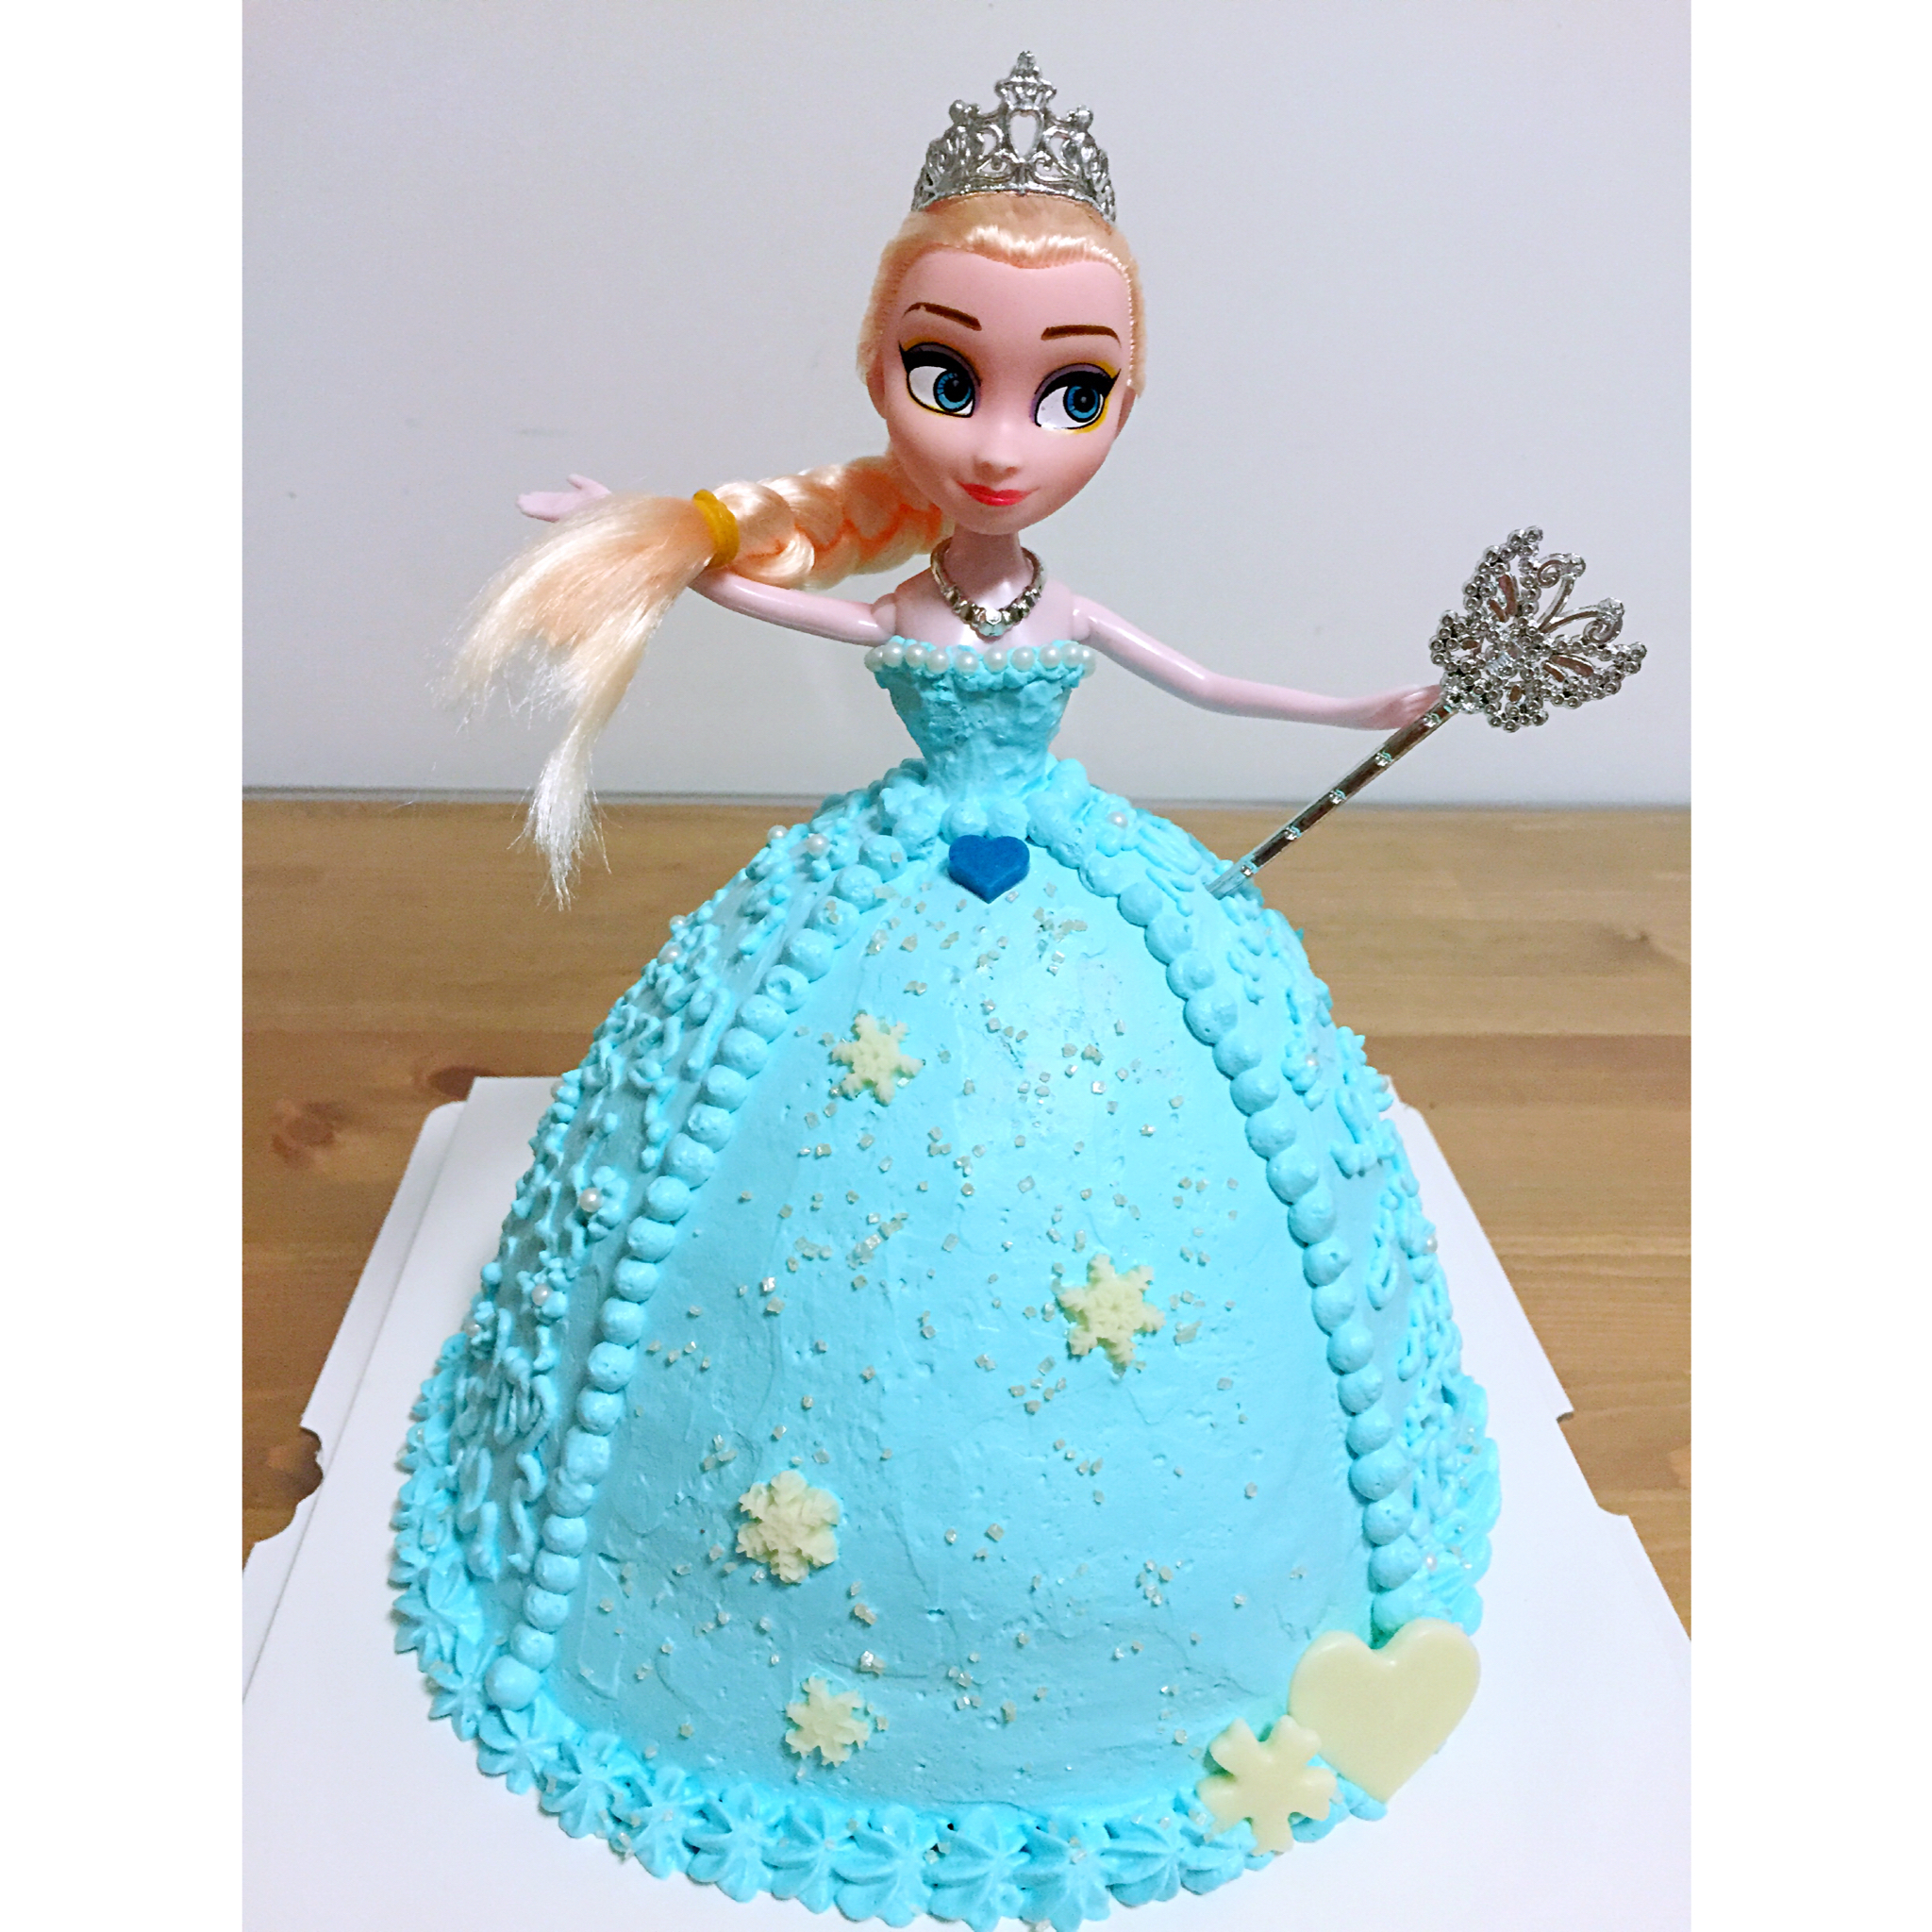 冰雪奇缘爱莎公主蛋糕